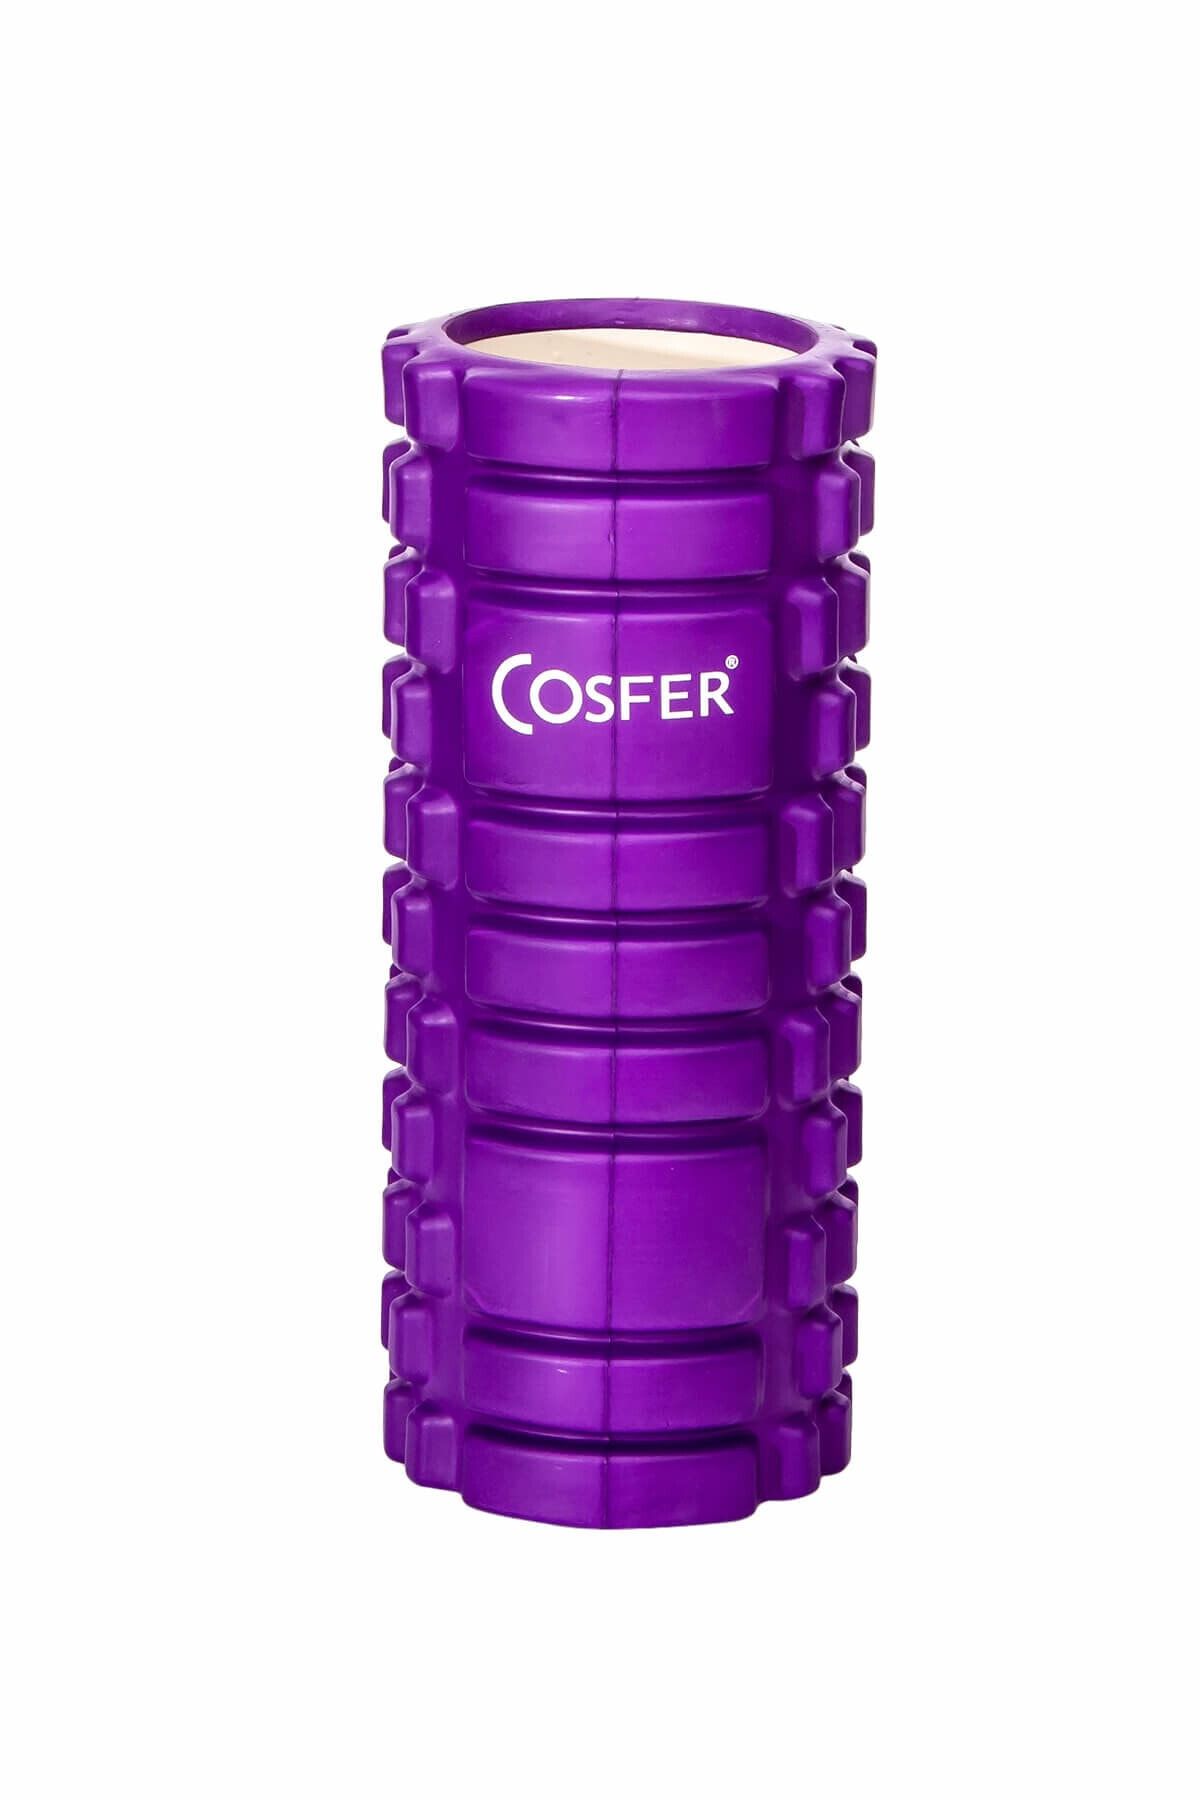 Cosfer CSF-56MR Hollow Foam Roller Mor